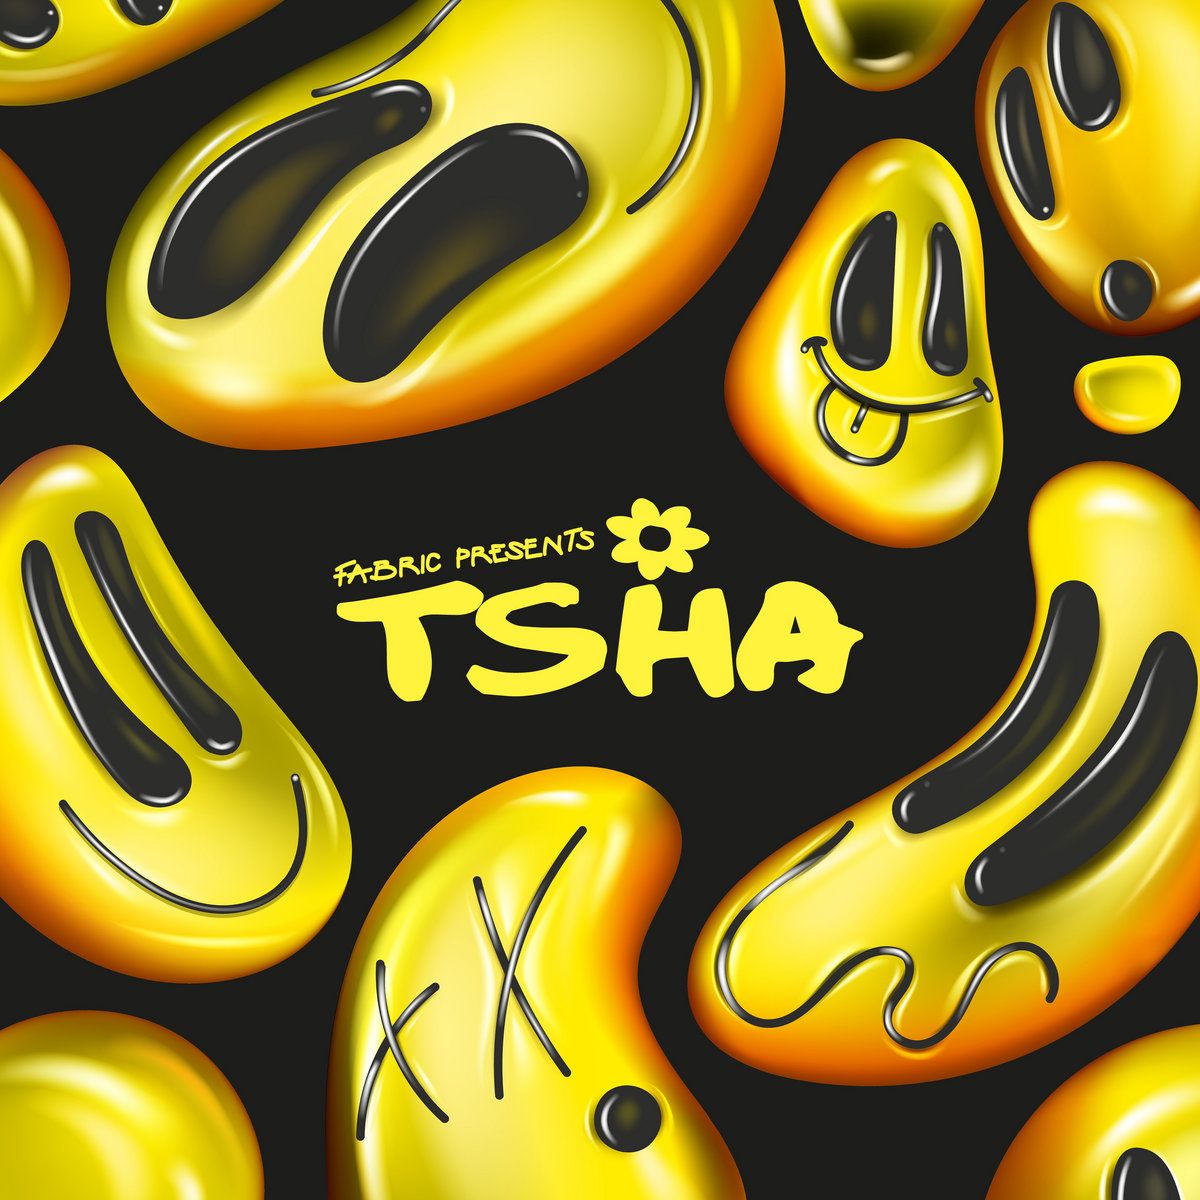 TSHA - Fabric Presents TSHA - 2LP